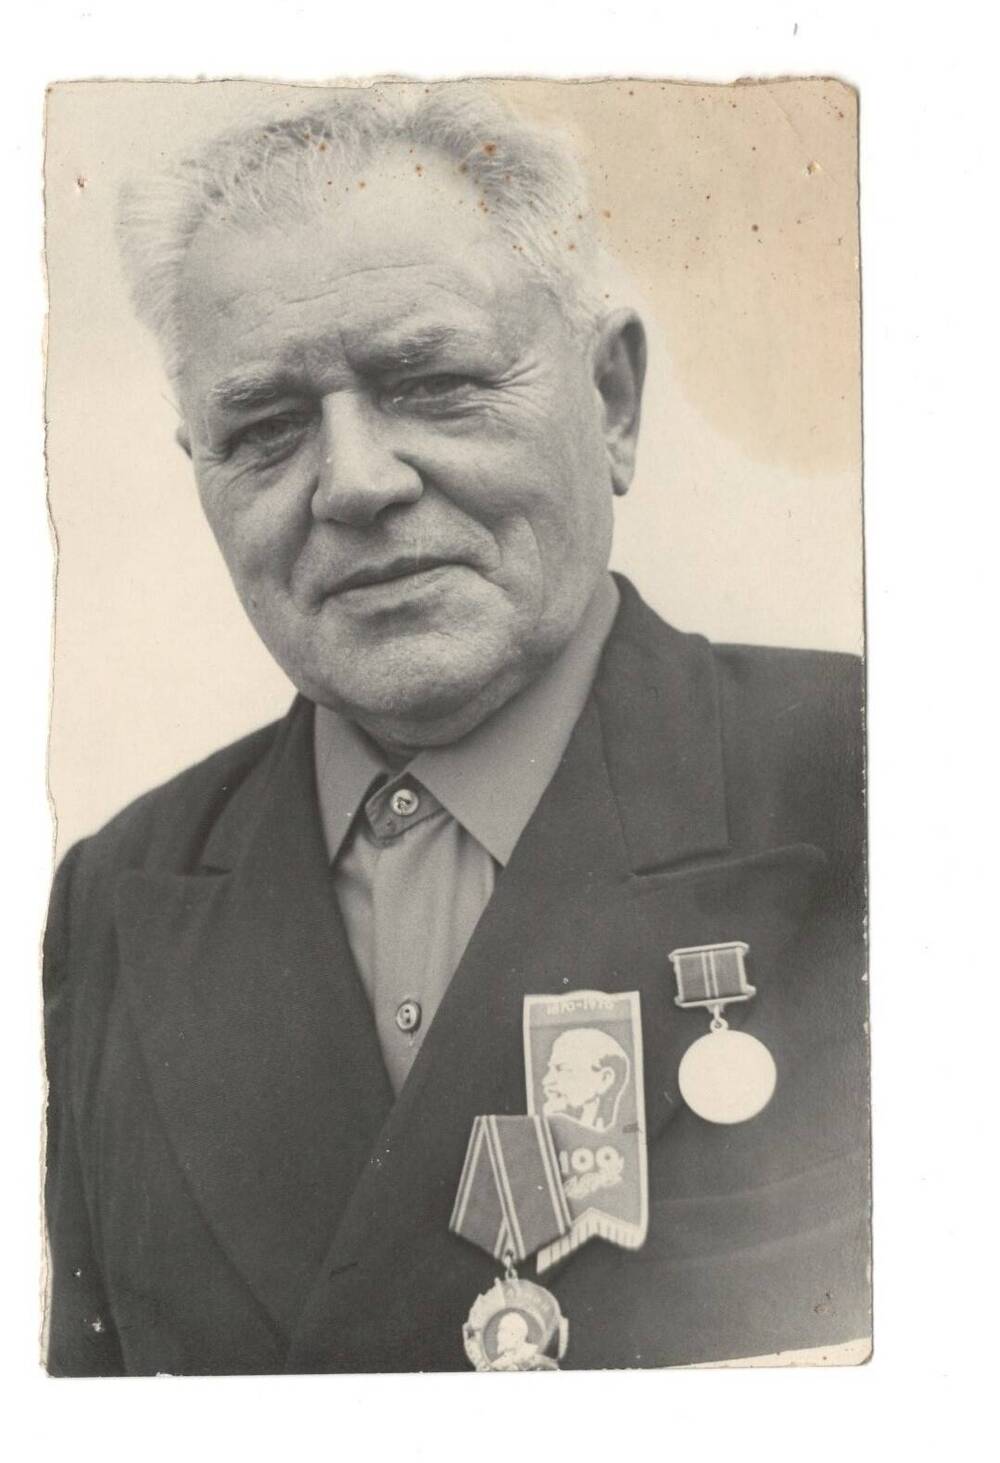 Фото поясное.  Собакин  Николай  Дмитриевич  - уроженец  г.Карачева, участник  Великой Отечественной войны.